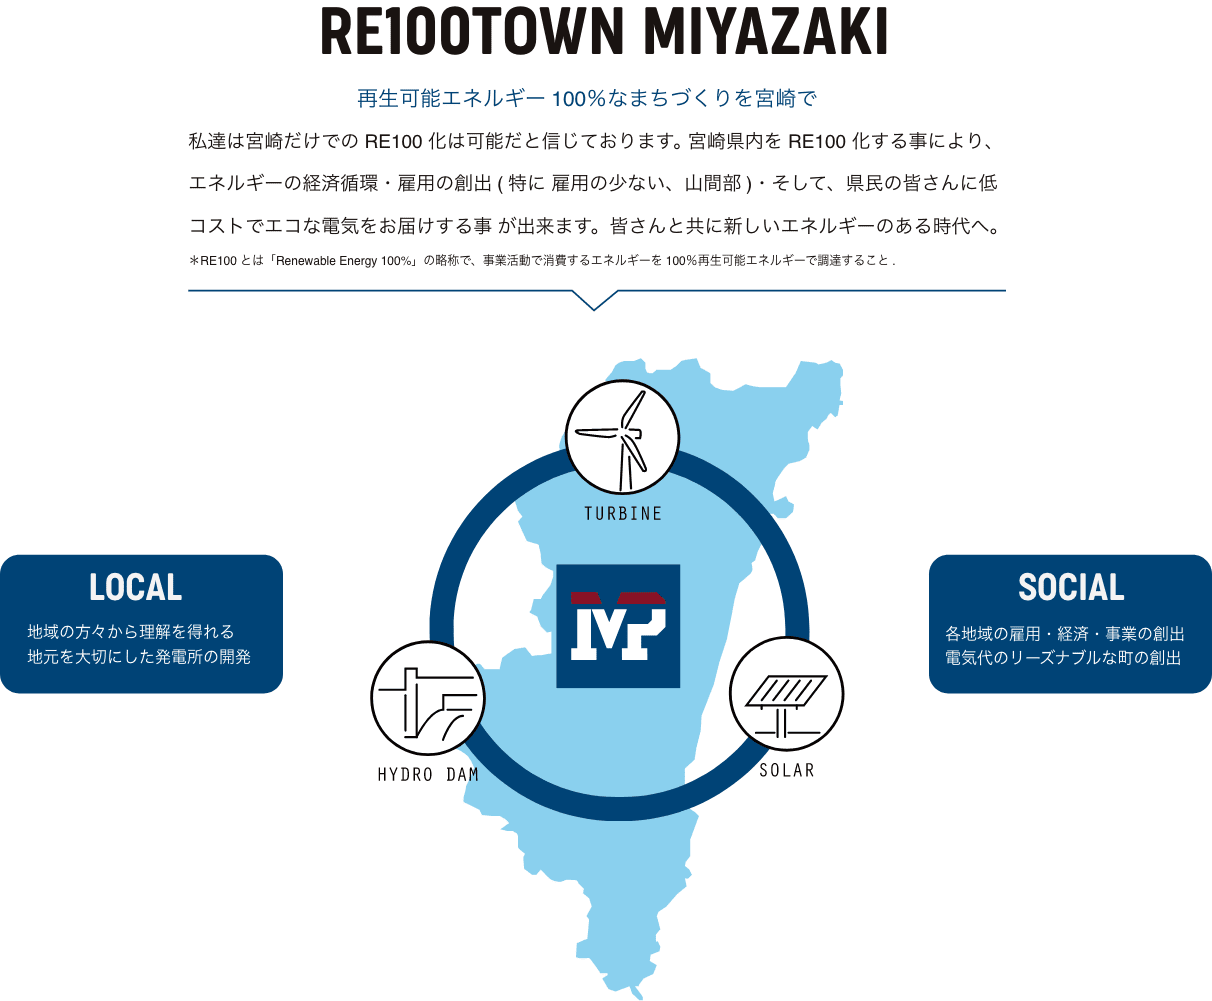 RE100 TOWN MIYAZAKI 宮崎電力グループは宮崎だけでのRE100は可能だと確信しております。宮崎県内をRE100化する事により、エネルギーの経済循環・雇用の創出（特に雇用の少ない、山間部）・そして、県民の皆さんにリーズナブルな電気を届けることが出来ると信じております。※RE100とは「Renewable Energy 100%」の略称で、事業活動で消費するエネルギーを100%再生可能エネルギーで調達すること。｜LOCAL＝地域の方々から理解を得れる地元を大切にした発電所の開発｜SOCIAL＝各地域の雇用・経済・事業の創出電気代のリーズナブルな町の創出